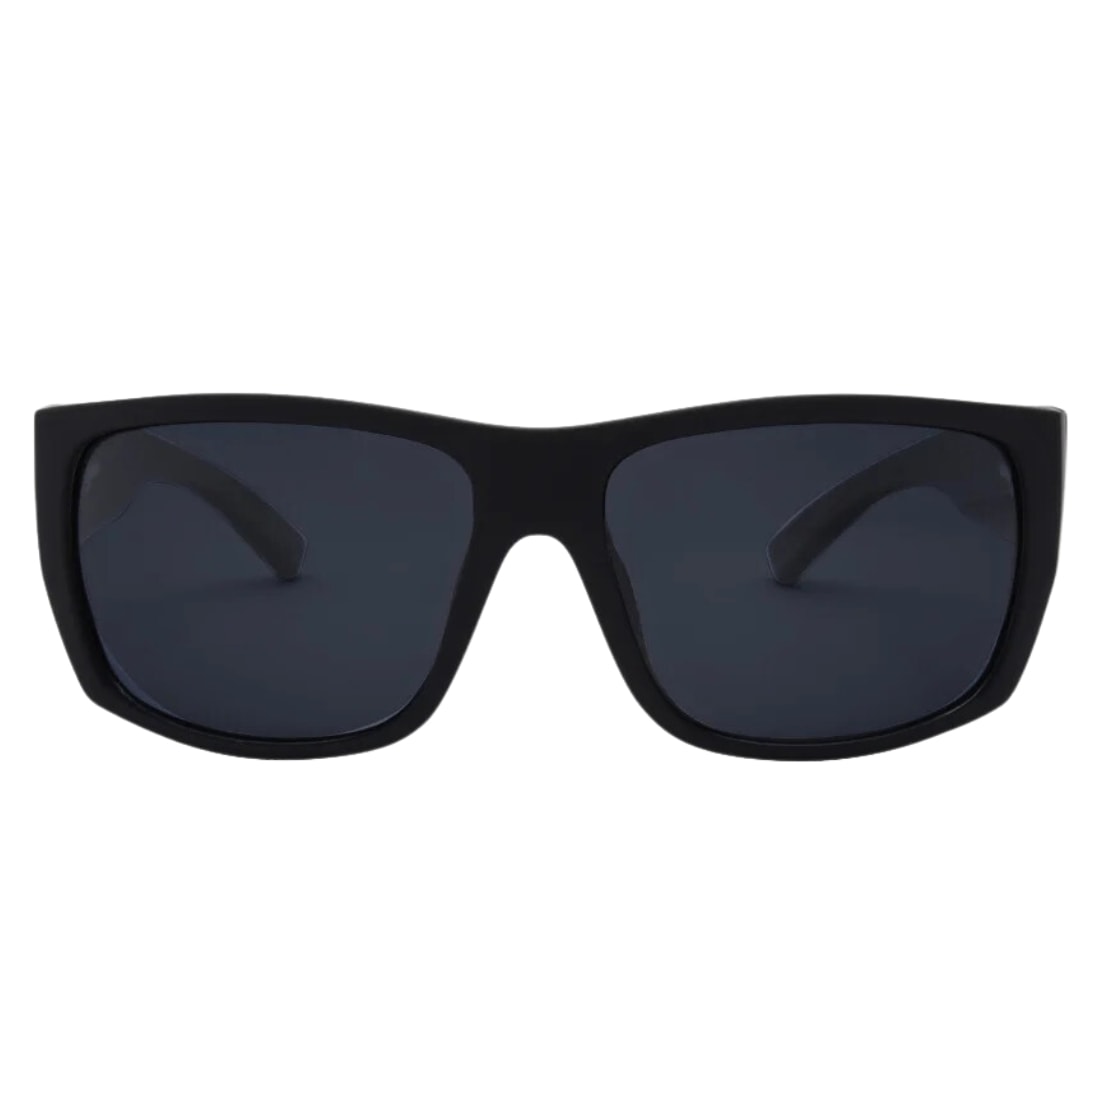 I-Sea Captain Wrap Around Polarised Sunglasses - Black/Smoke Polarized Lens - Wrap Around Sunglasses by I-Sea